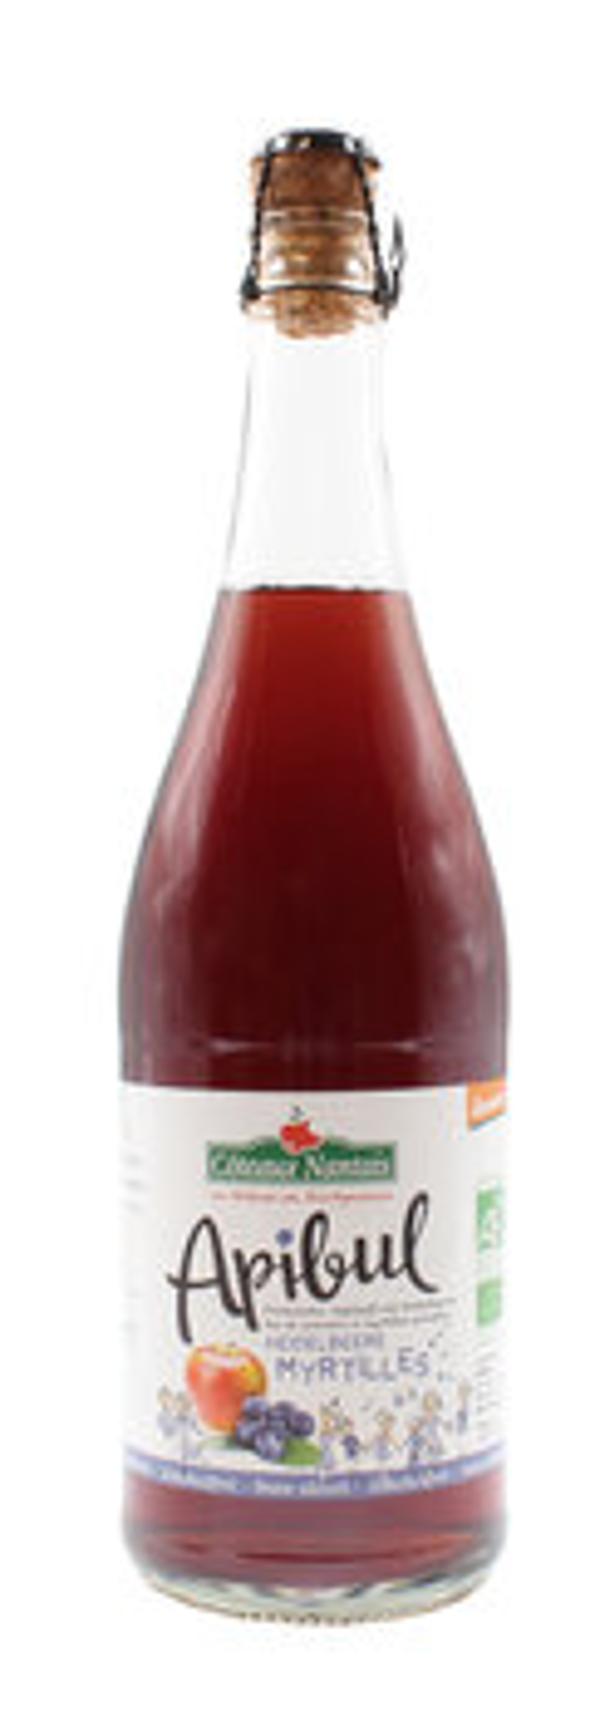 Produktfoto zu Apibul Apfel - Heidelbeere alkoholfrei 0,75L